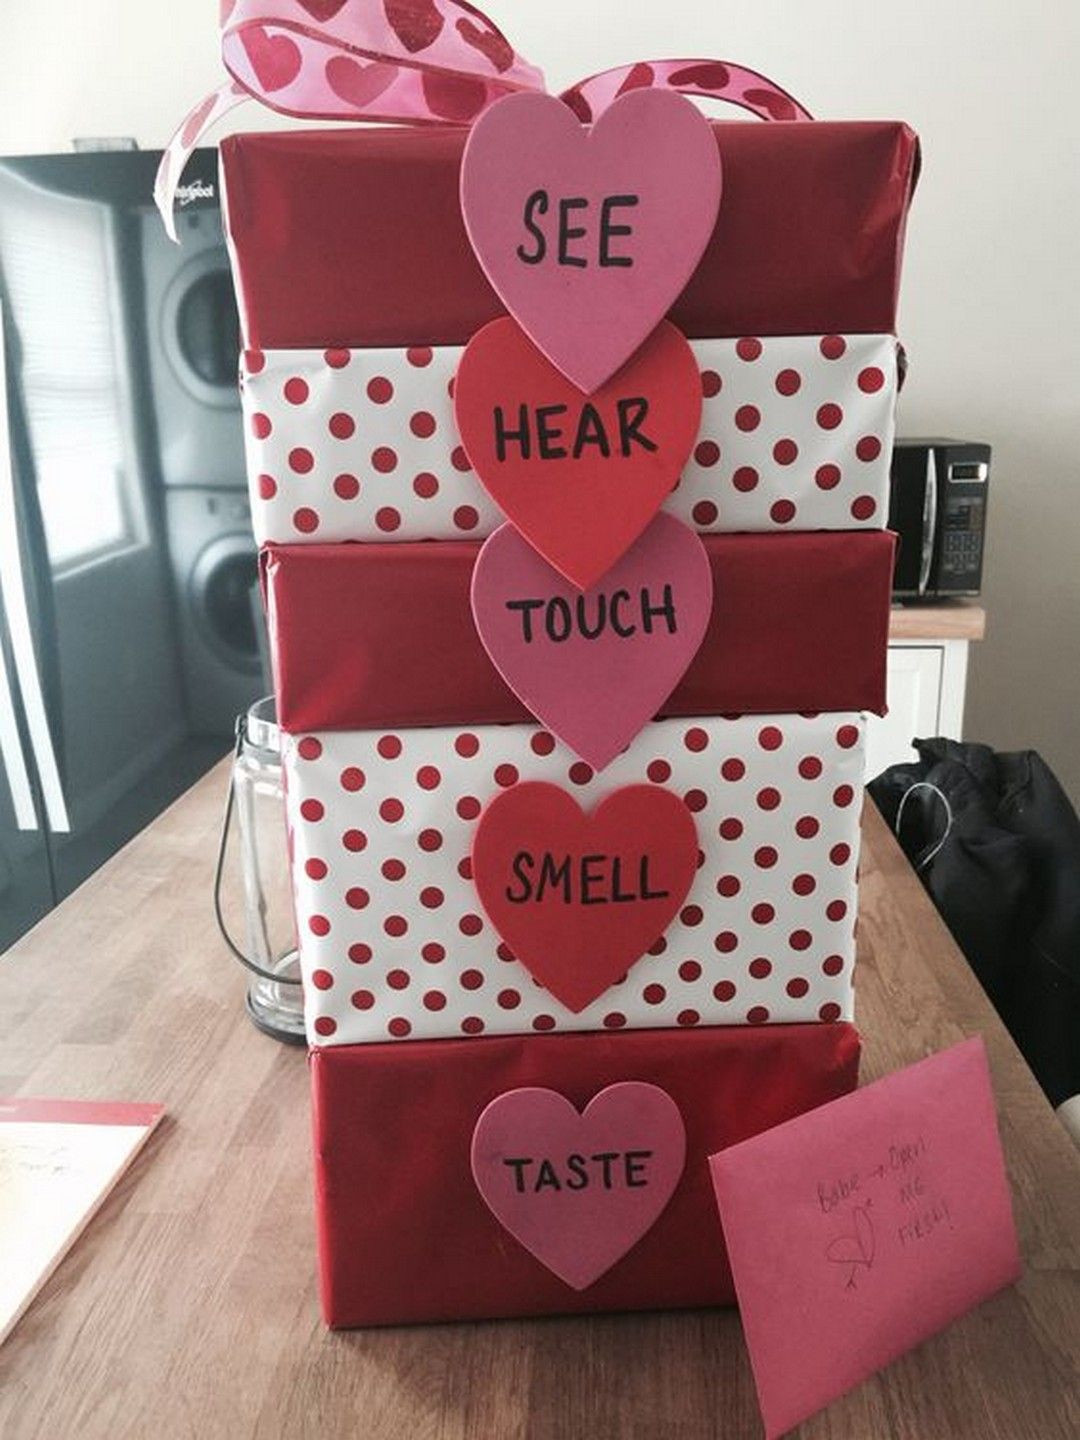 Valentines Day Ideas Gift Boyfriend
 Romantic DIY Valentines Day Gifts for Your Boyfriend or